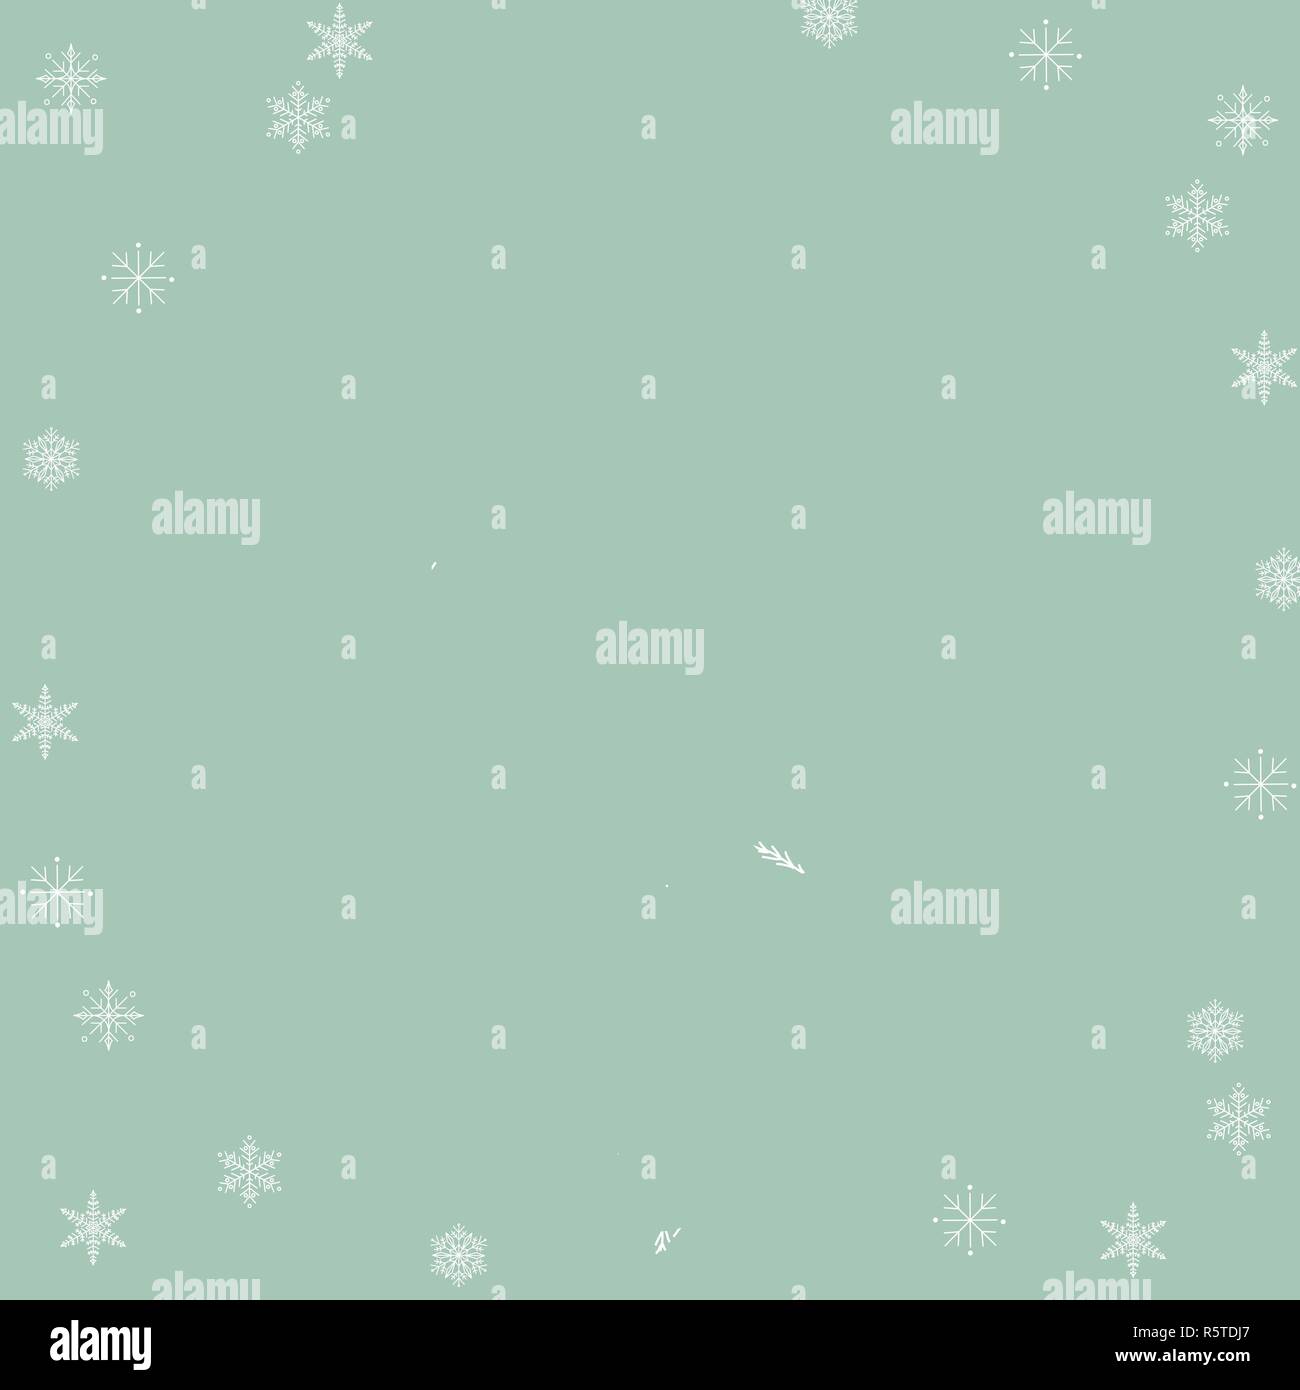 Hintergrund Design Fur Weihnachten In Einfache Flache Flache Hand Gezeichnete Grafik Weisse Silhouette Kranz Und Schneeflocken Sind Auf Pastell Blaue Hintergrund Mit Spac Stock Vektorgrafik Alamy